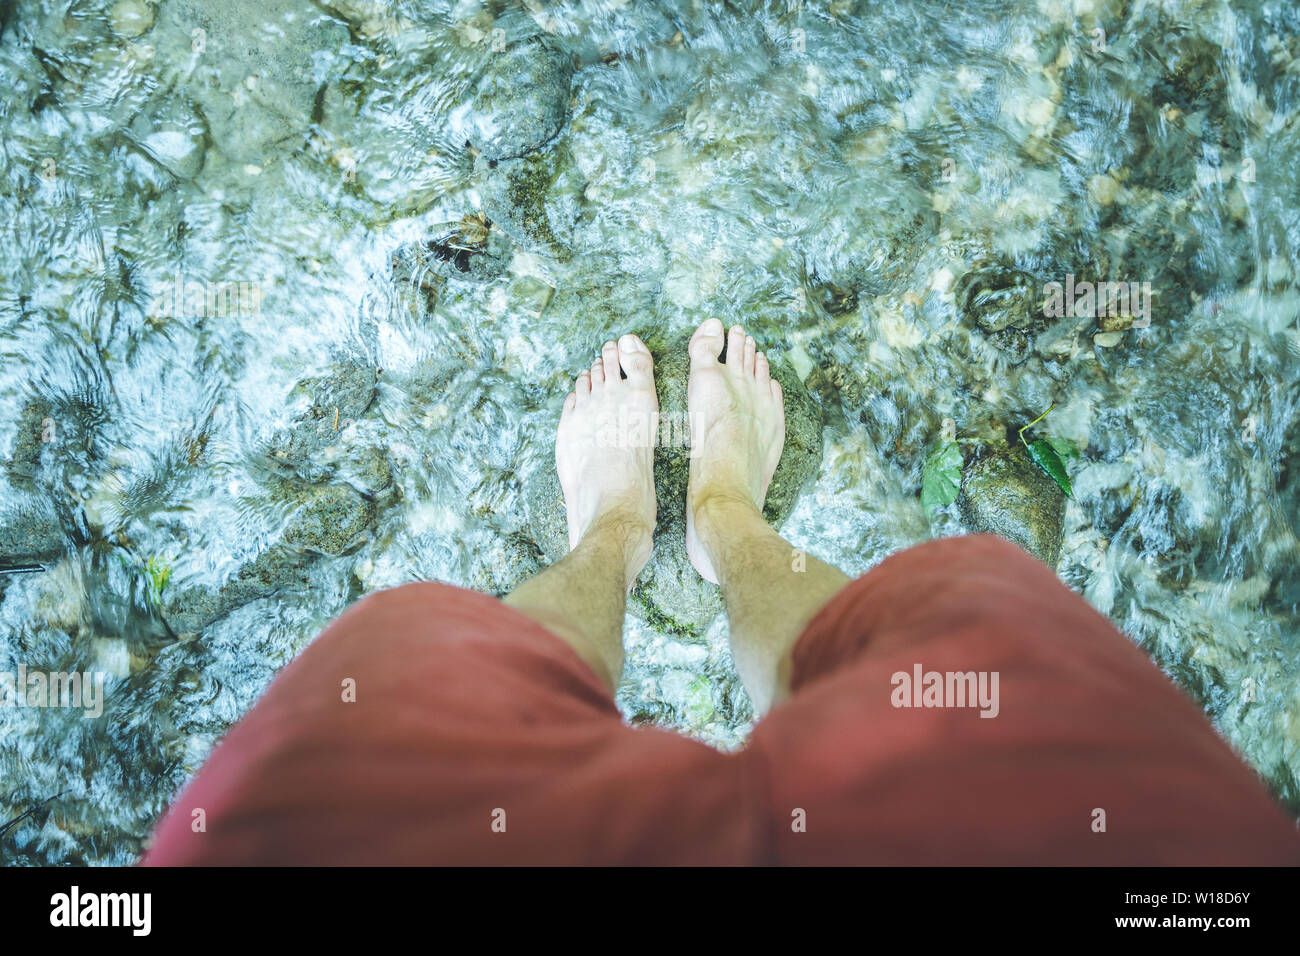 Tagliare dei maschi di piedi scalzi con pantaloni rossi a piedi in un fiume poco profondo Foto Stock